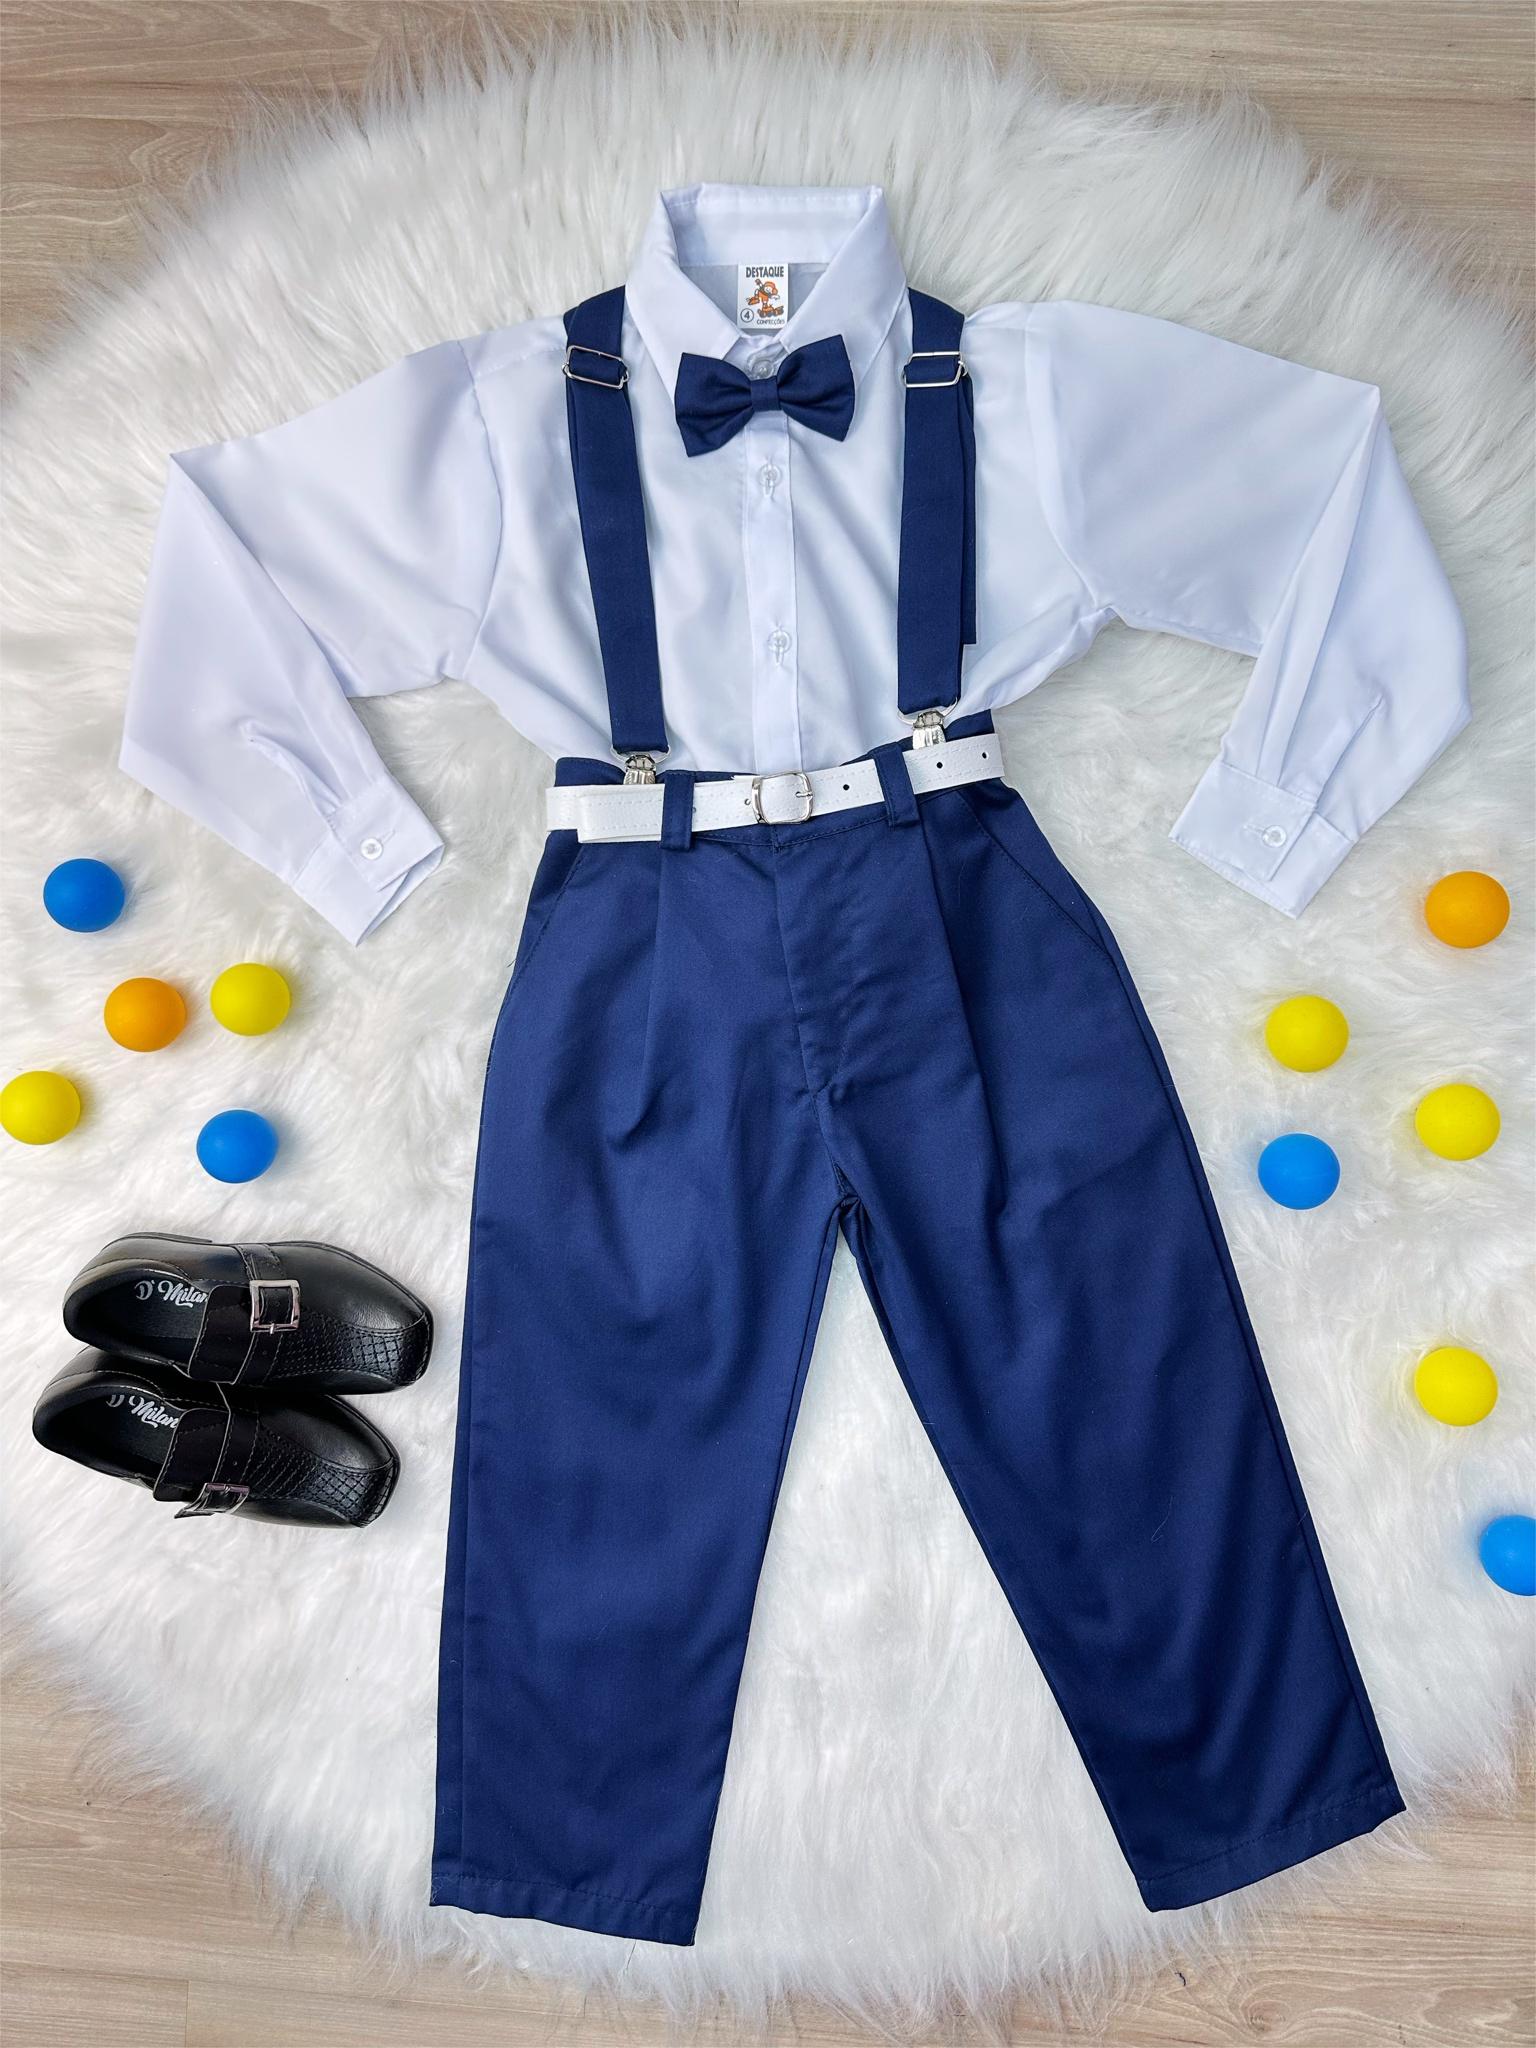 Conjunto Social Camisa Calça Gravata e Susp. Azul Marinho